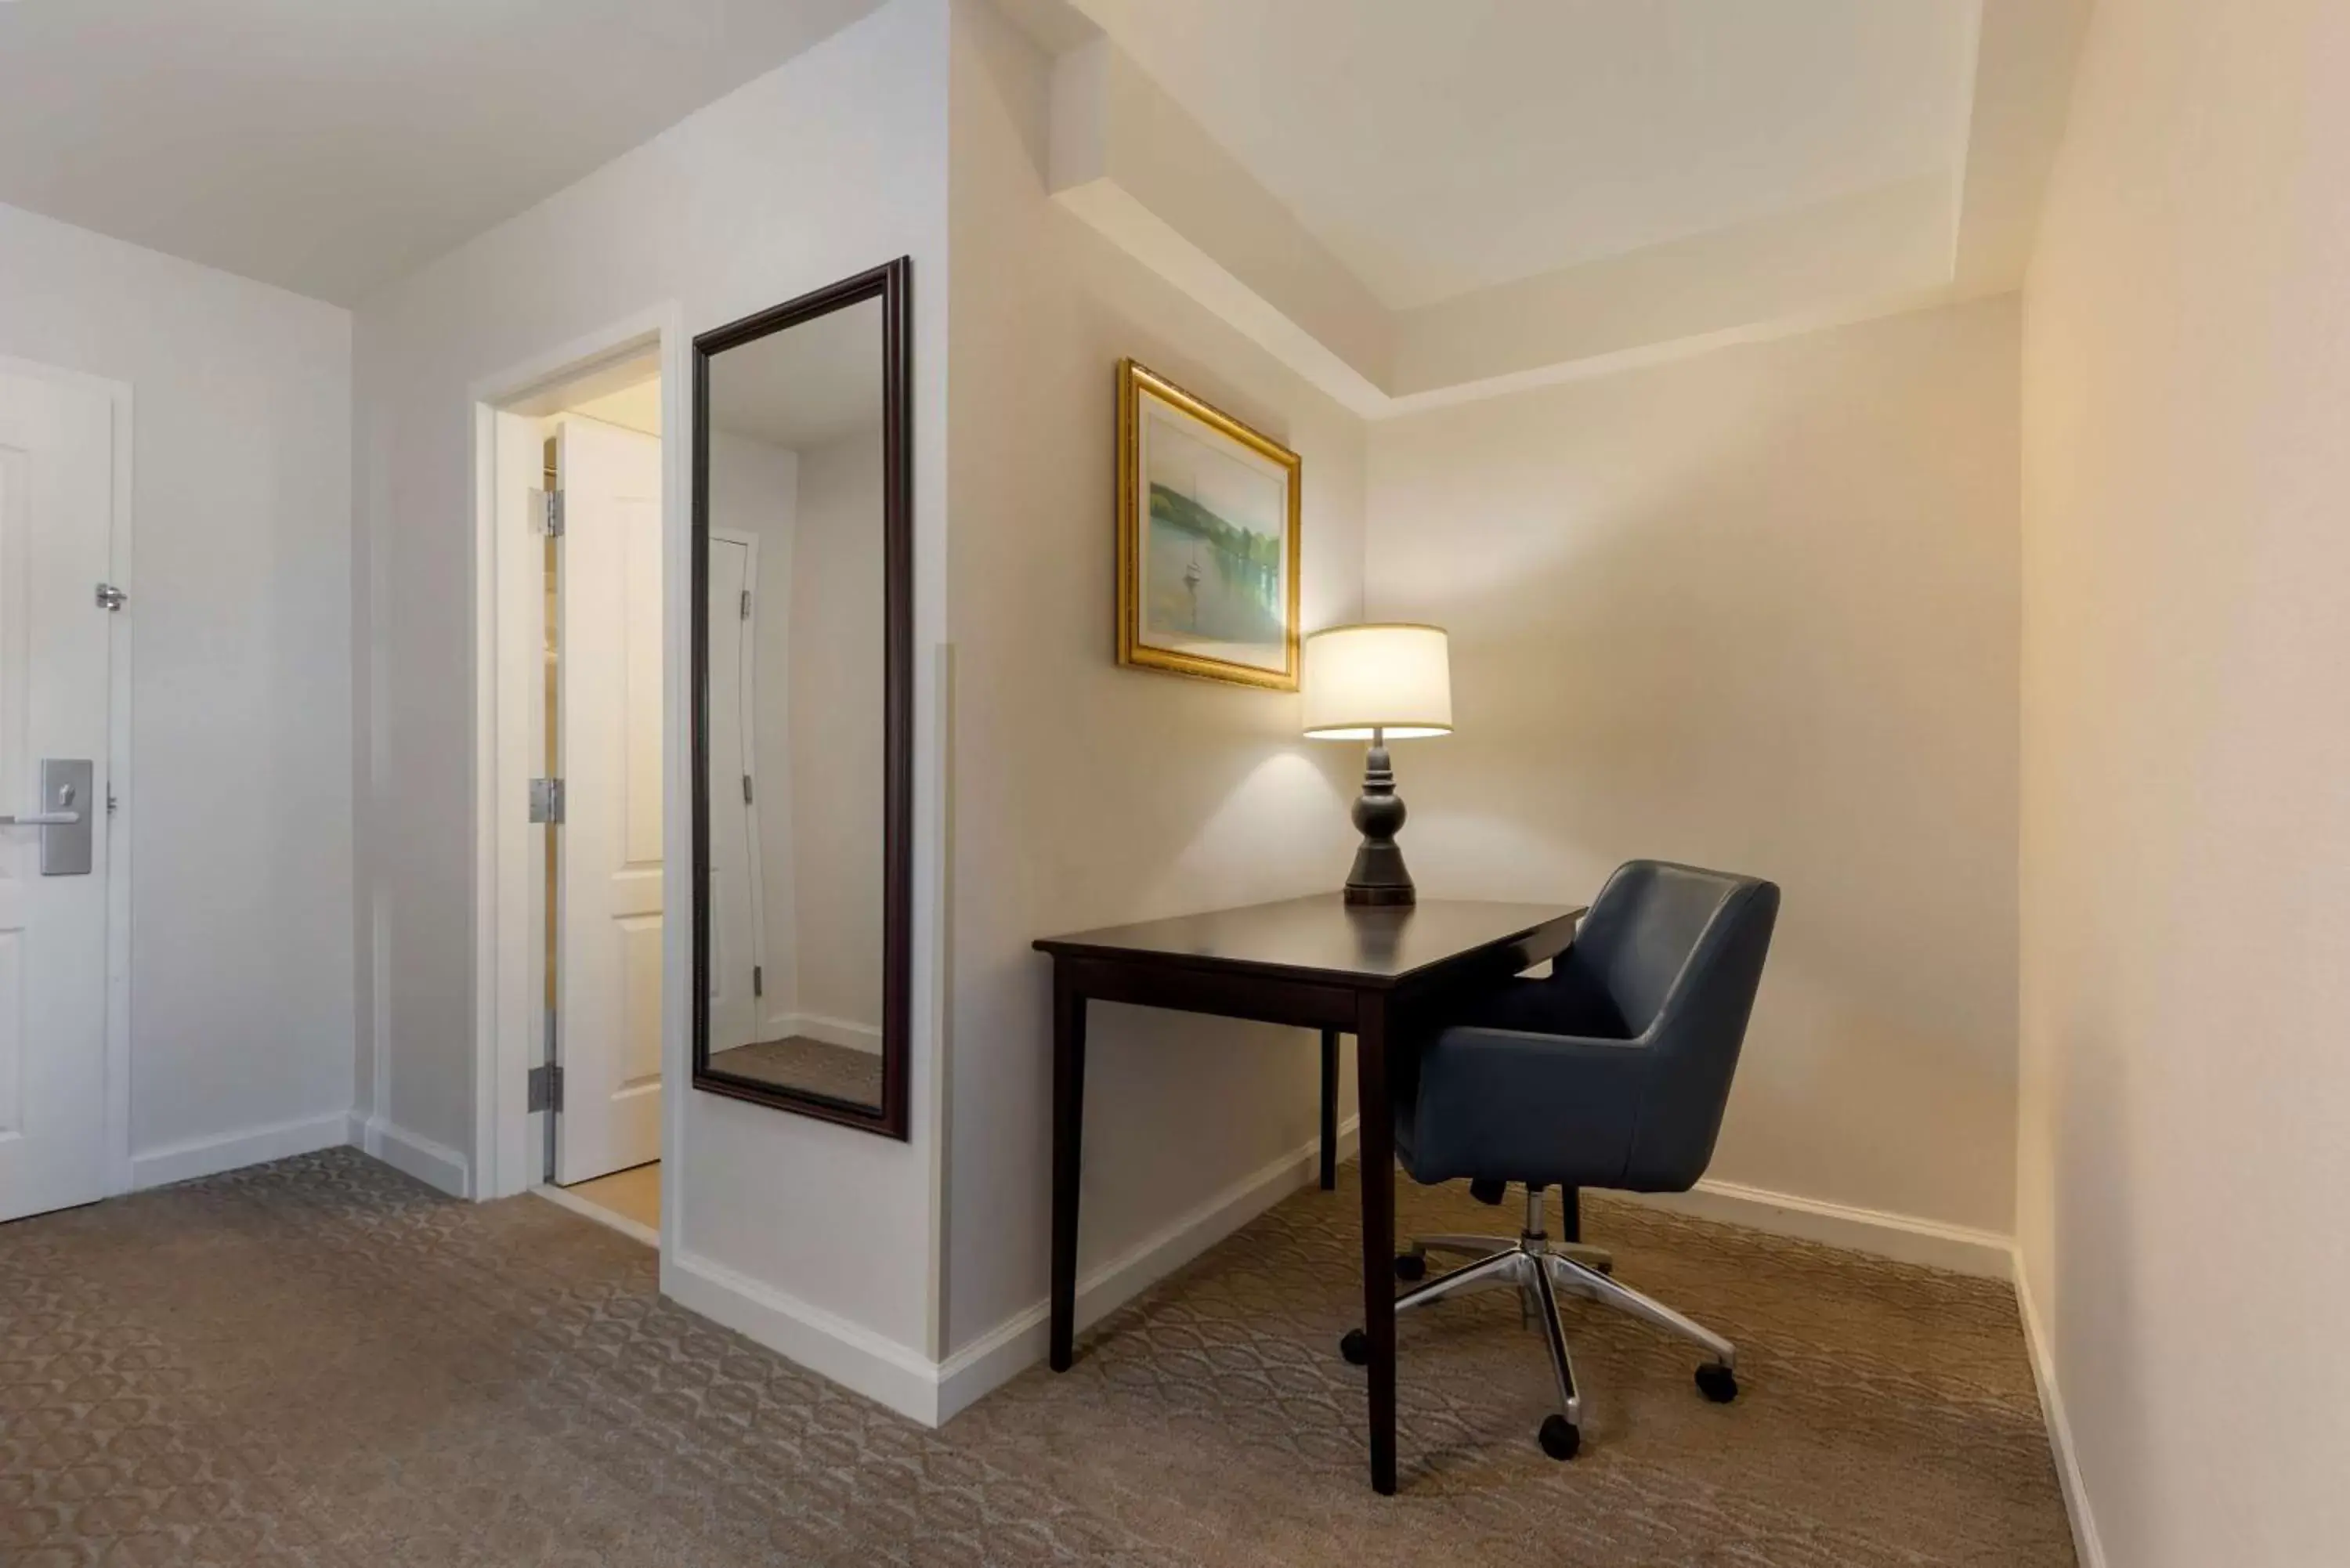 Bedroom, Seating Area in Best Western PLUS Vineyard Inn and Suites